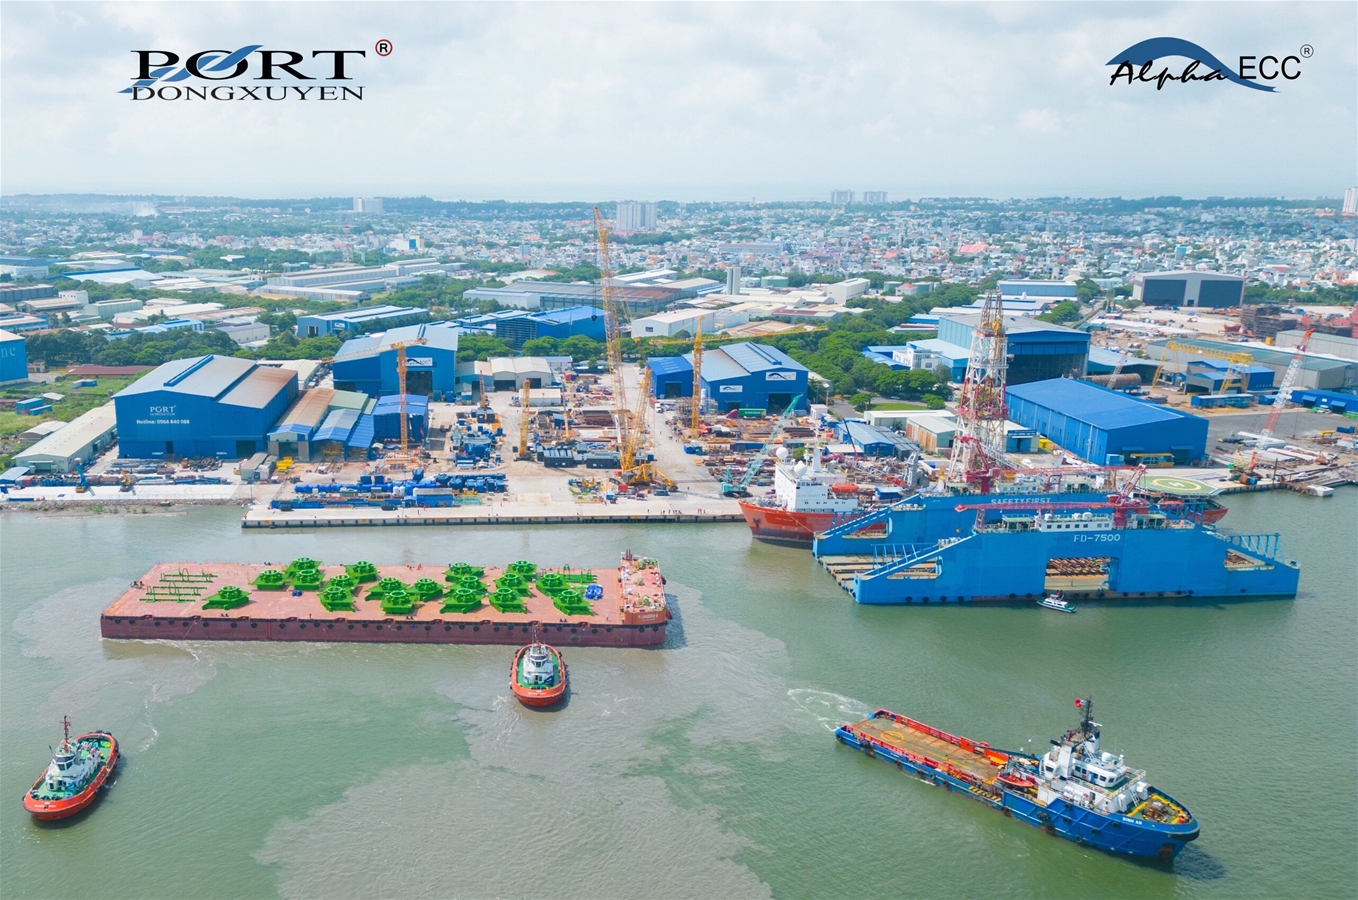 Cung cấp dịch vụ đại lý, cung cấp tàu lai và dịch vụ cầu cảng phục vụ Sà lan TIPM NO.514001 (LOA=141 M) tại Cảng Đông Xuyên